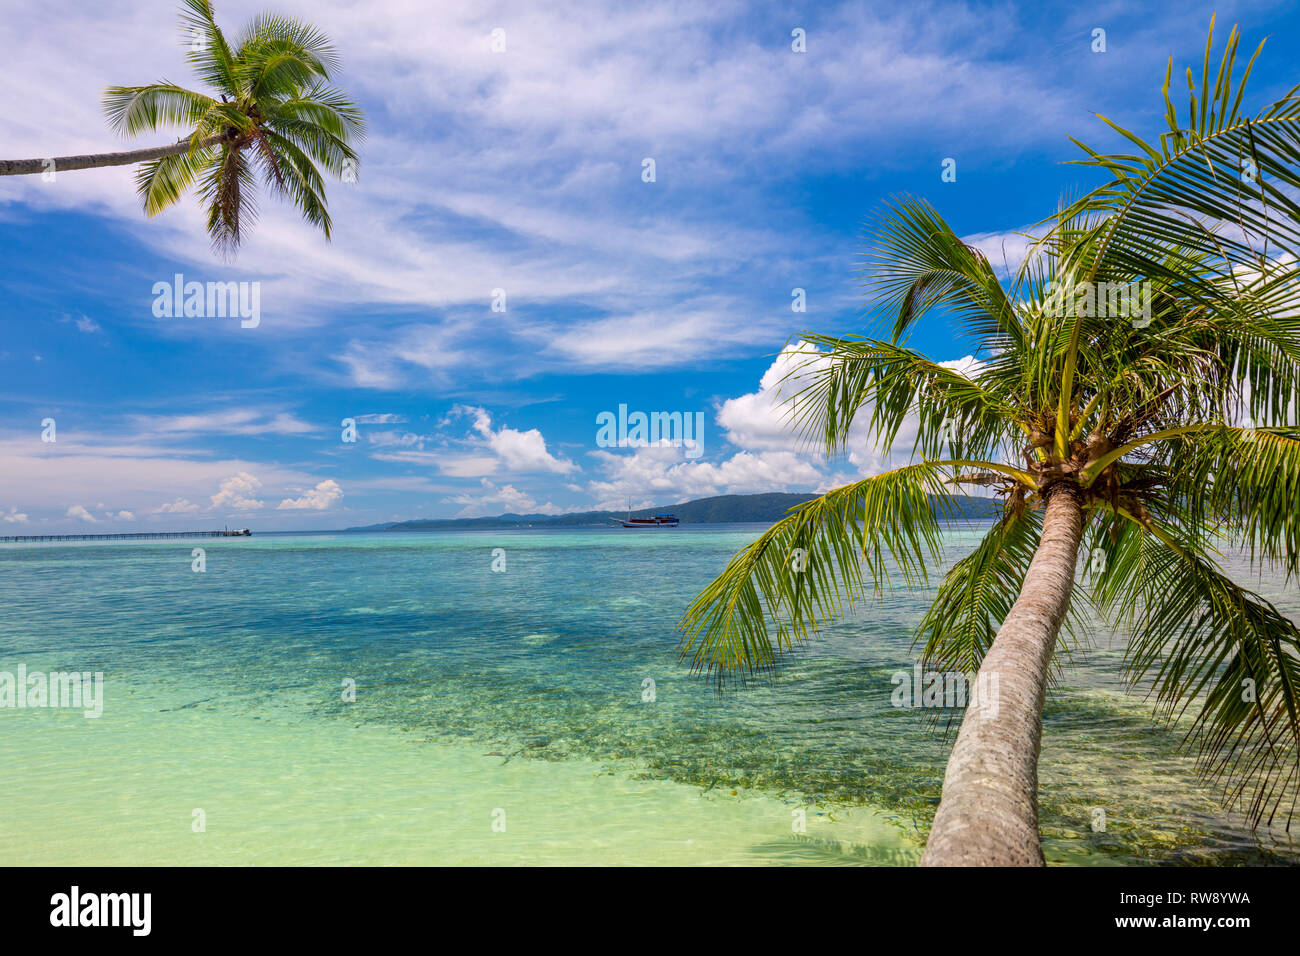 Paradise spiaggia tropicale di sfondo - mare calmo surf, palme e cielo blu - tropicale idilliaco resto sulla costa dell'isola Foto Stock